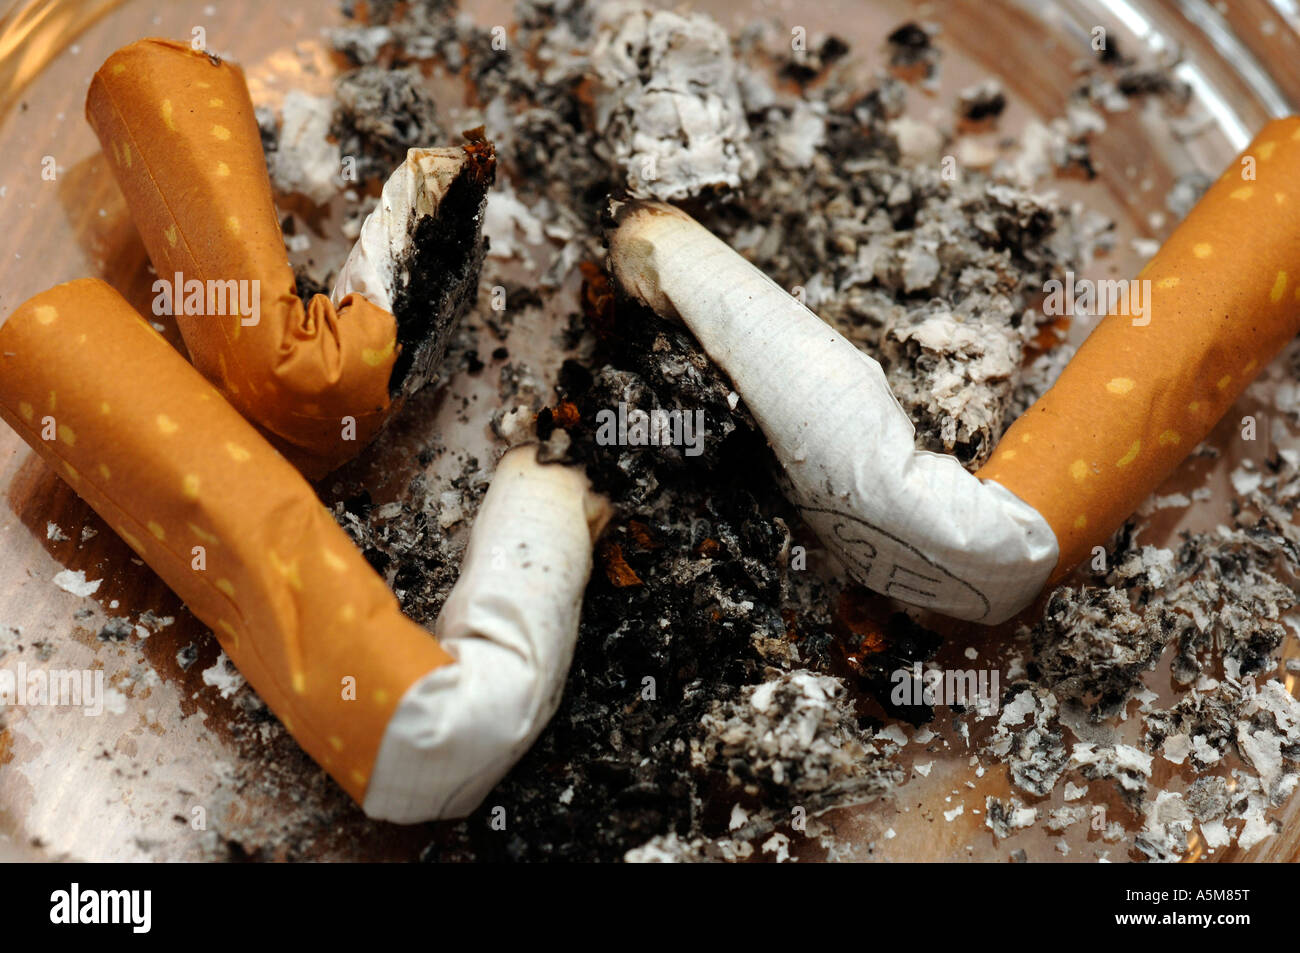 Im Zigarette Aschenbecher rauchen Raucher Tabak Asche blauer Dunst Zigaretten Glimmstengel Krankheit Sargnagel paffen Ziehen glü Foto de stock